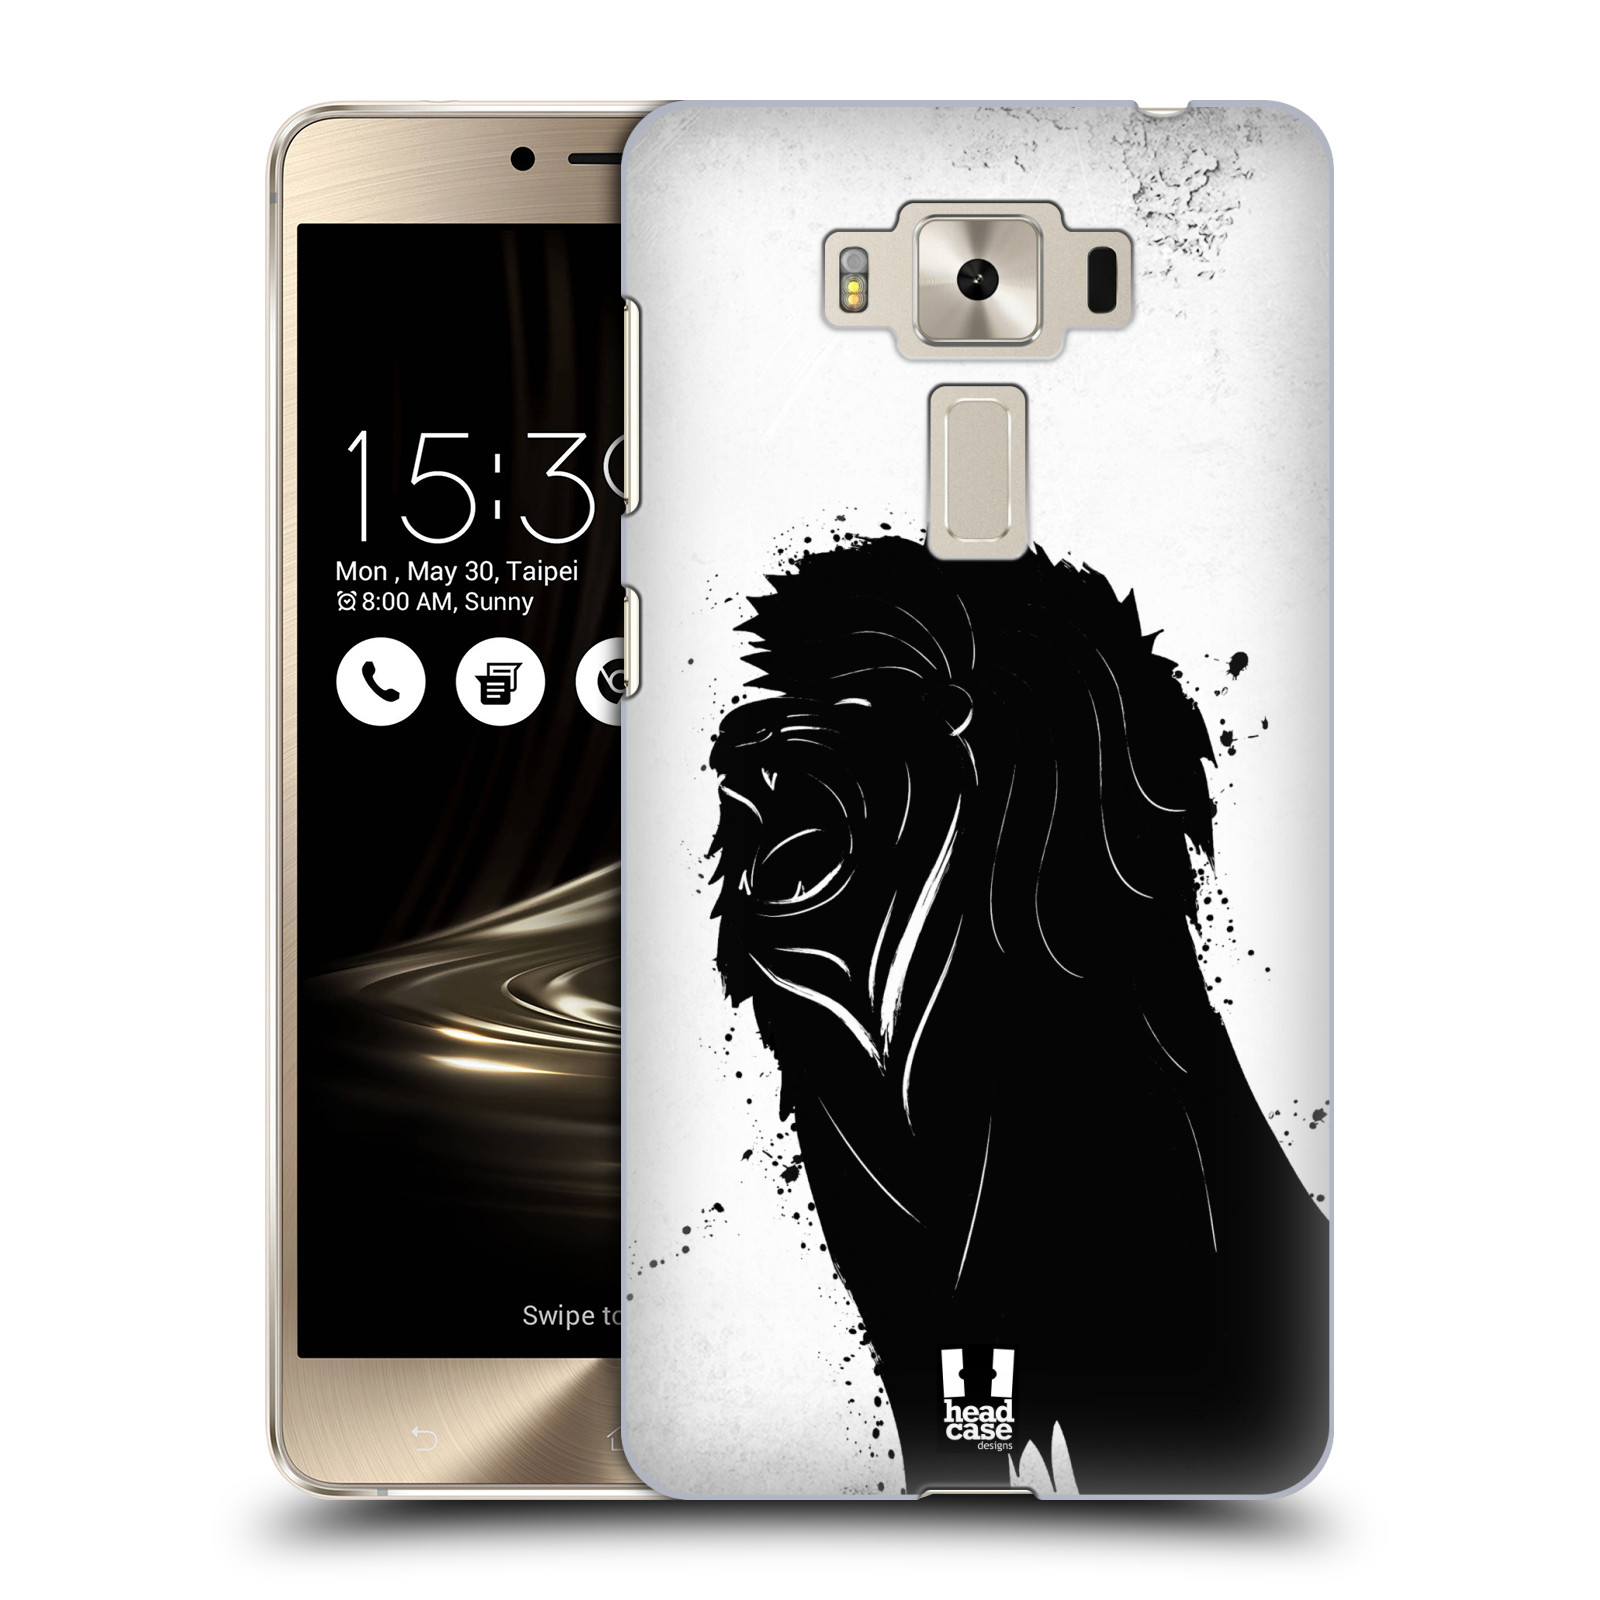 HEAD CASE plastový obal na mobil Asus Zenfone 3 DELUXE ZS550KL vzor Kresba tuš zvíře lev